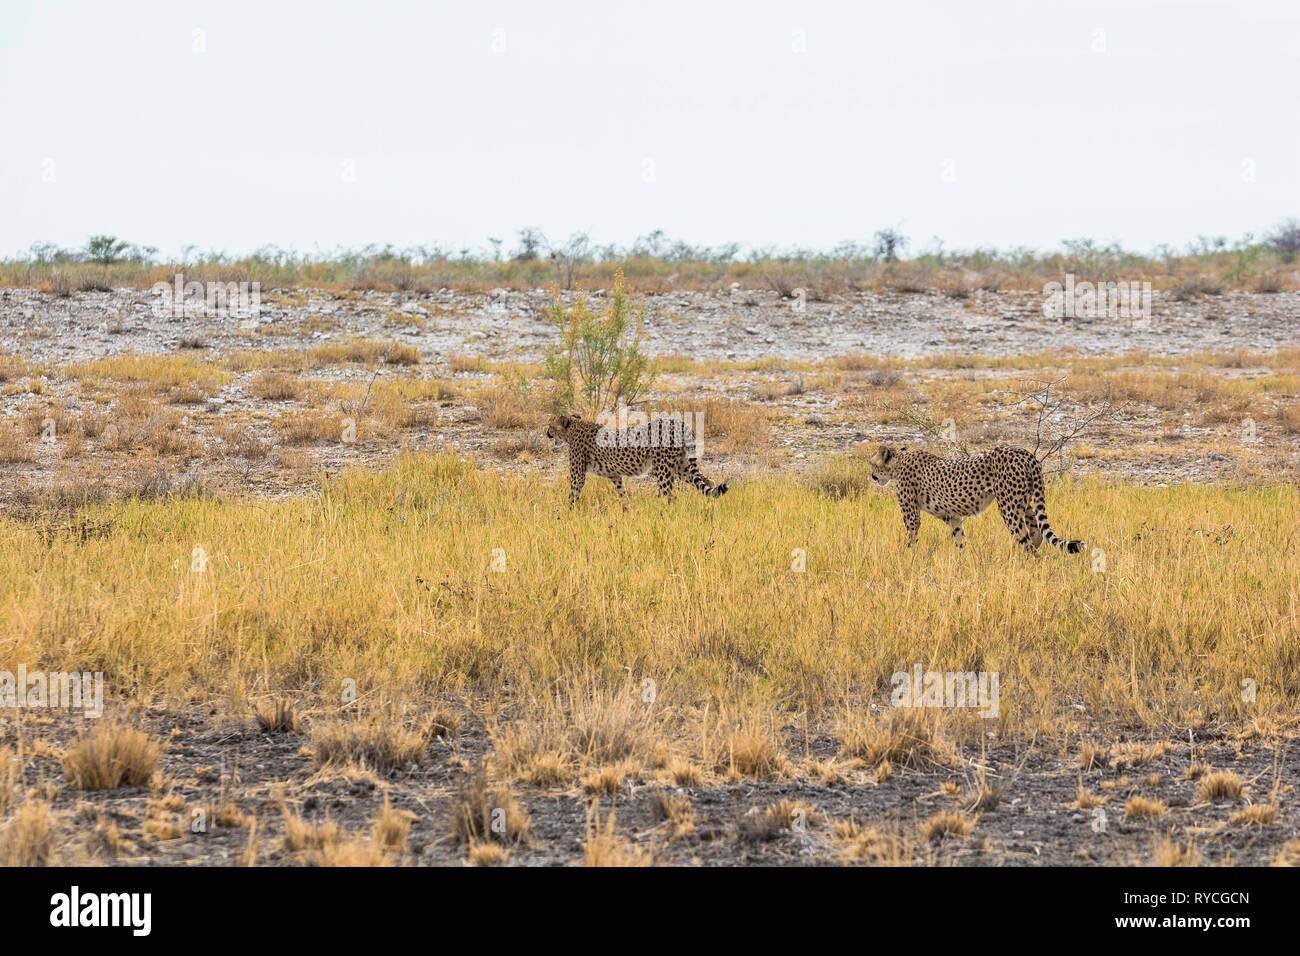 Cheetah in the grass of Etosha Park, Namibia Stock Photo